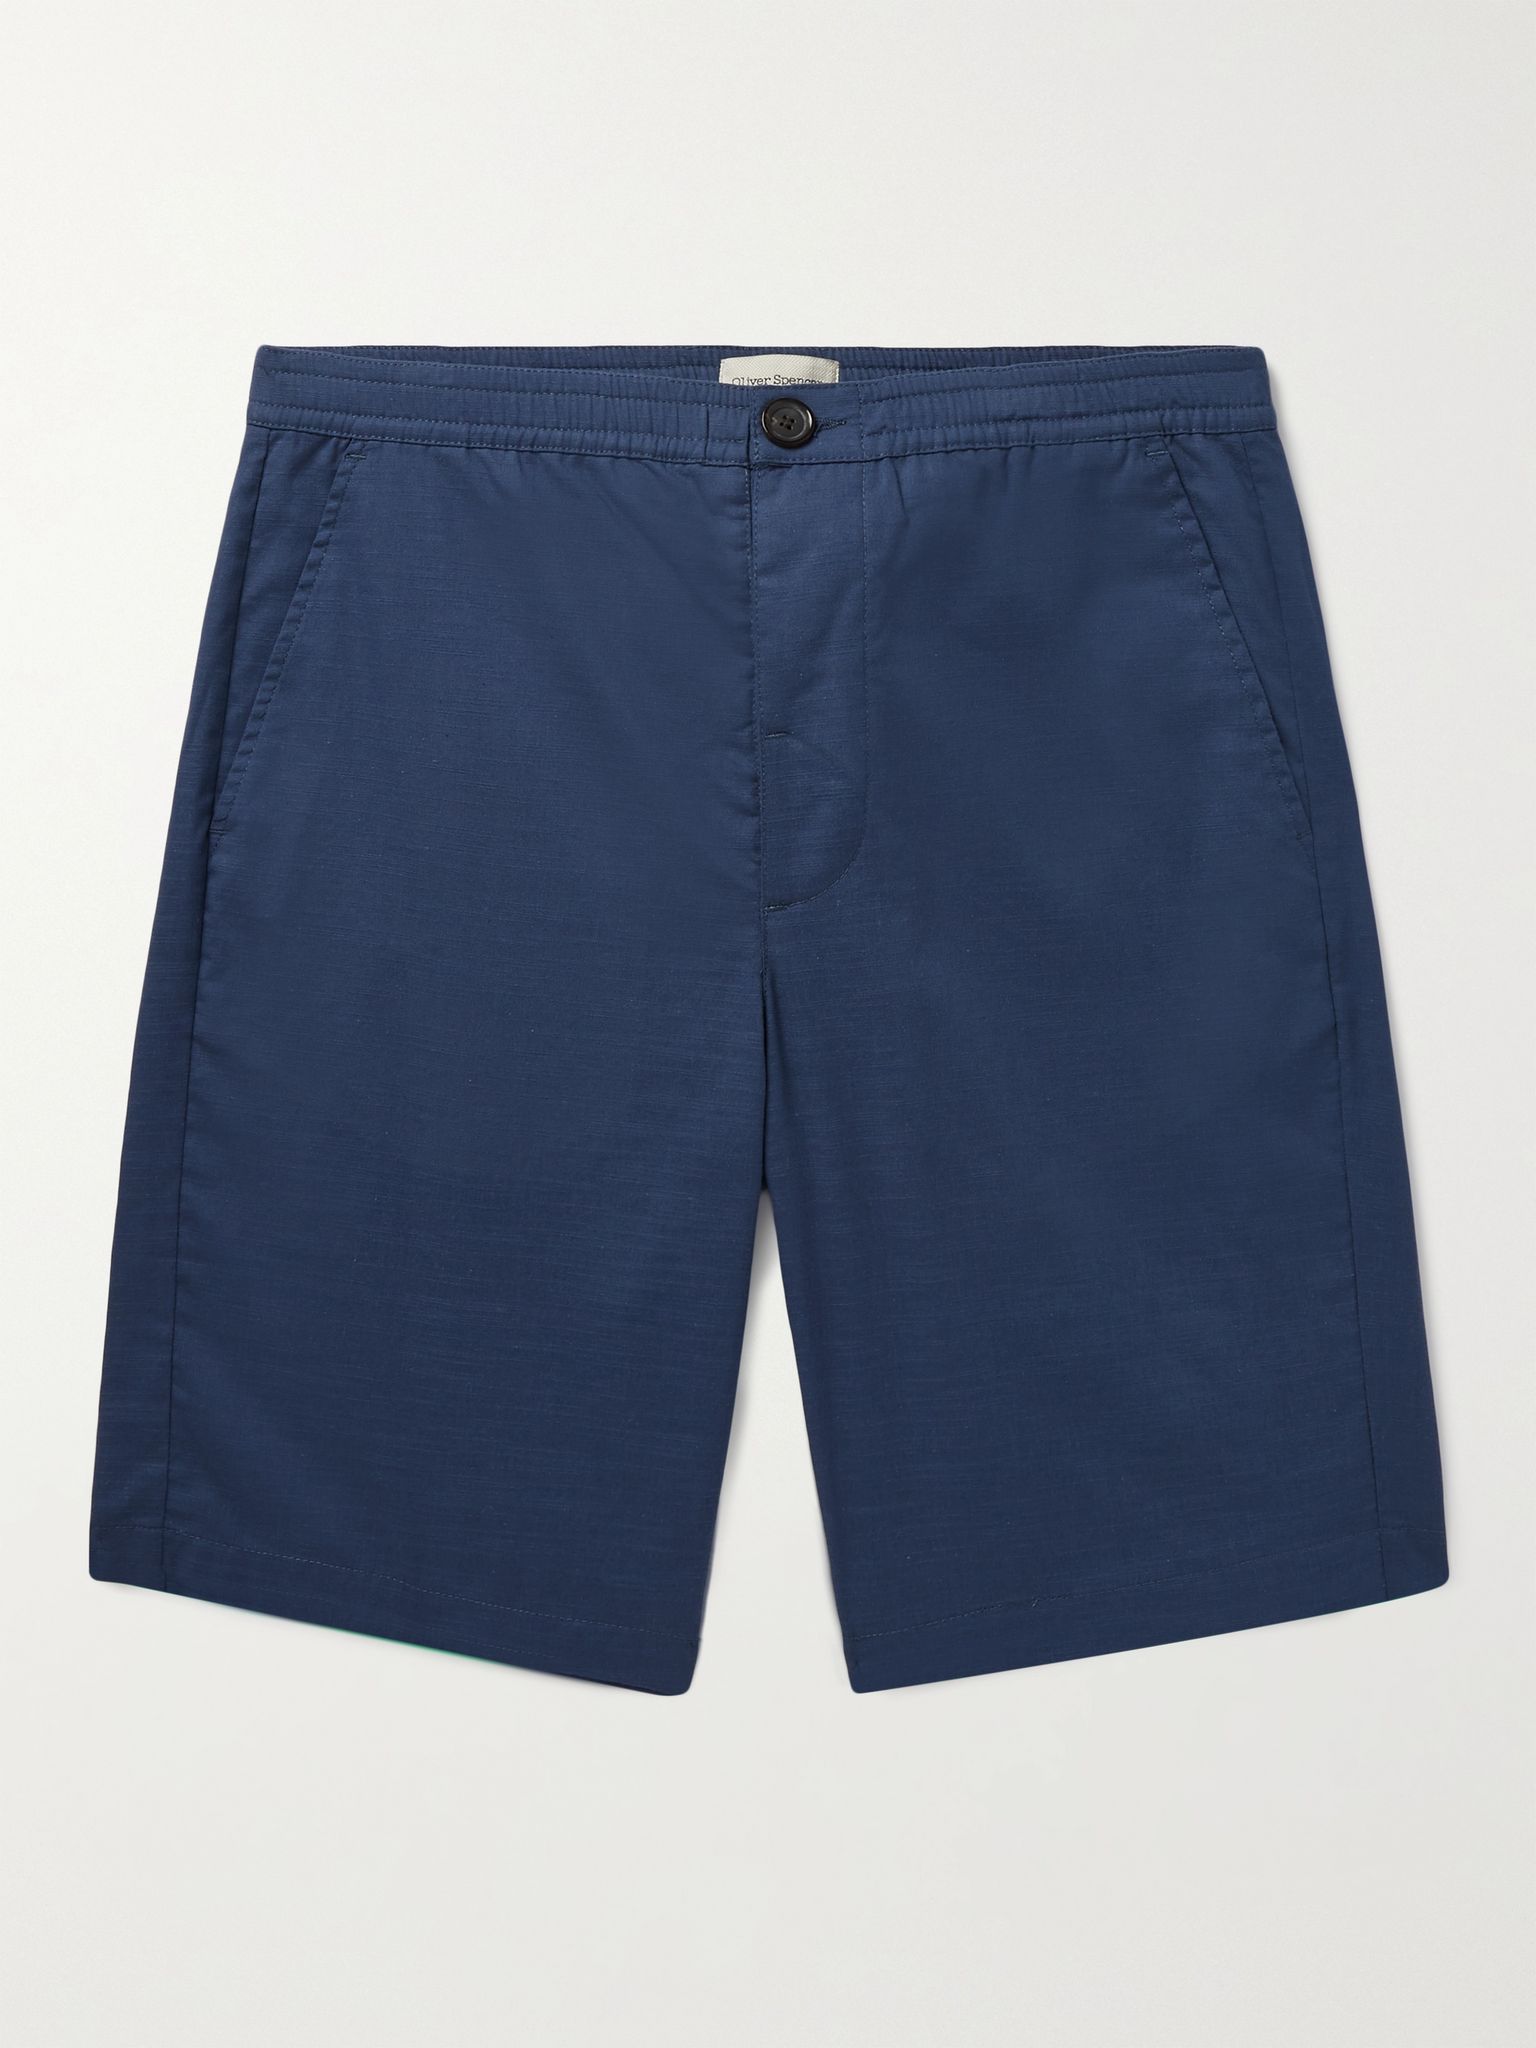 Blue Cotton Shorts | OLIVER SPENCER | MR PORTER